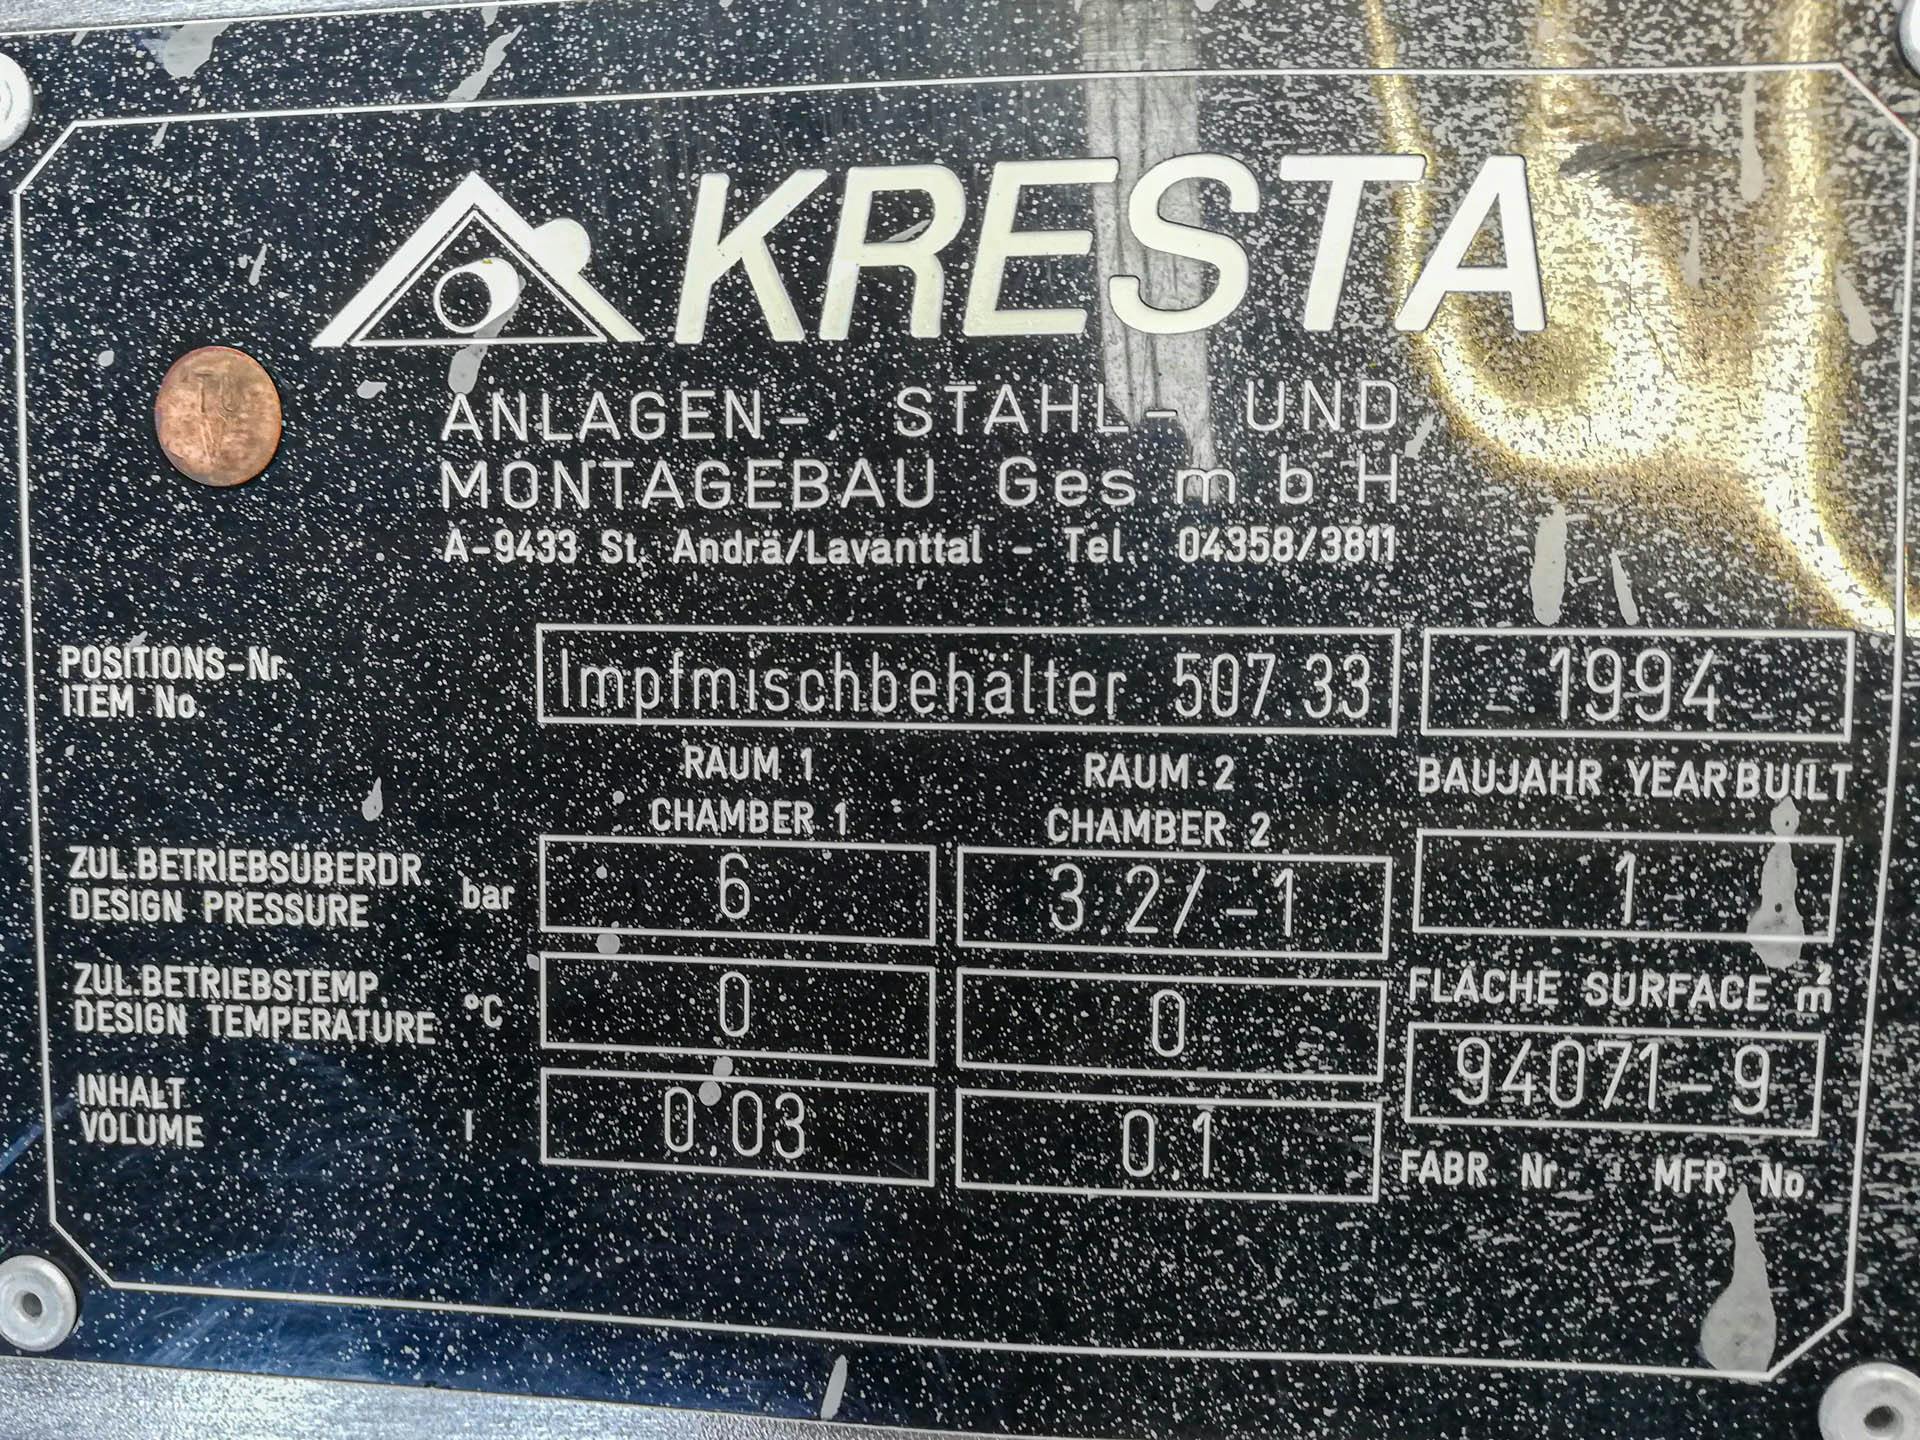 Kresta 150 Ltr - Pressure vessel - image 4